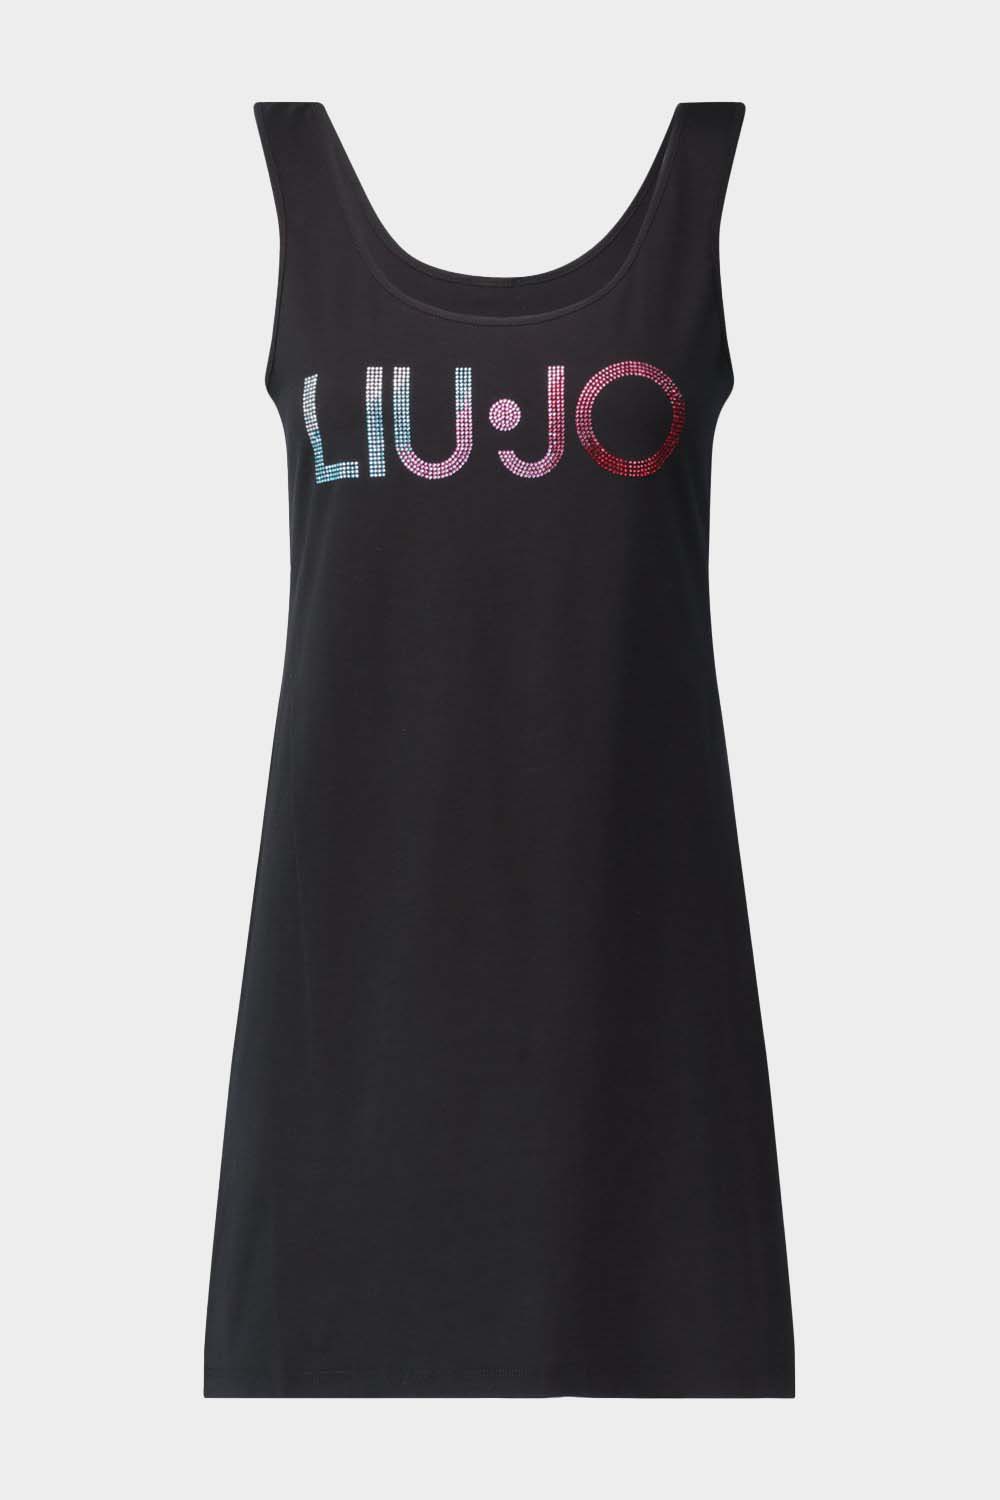 שמלה קצרה לנשים לוגו LIU JO Vendome online | ונדום .